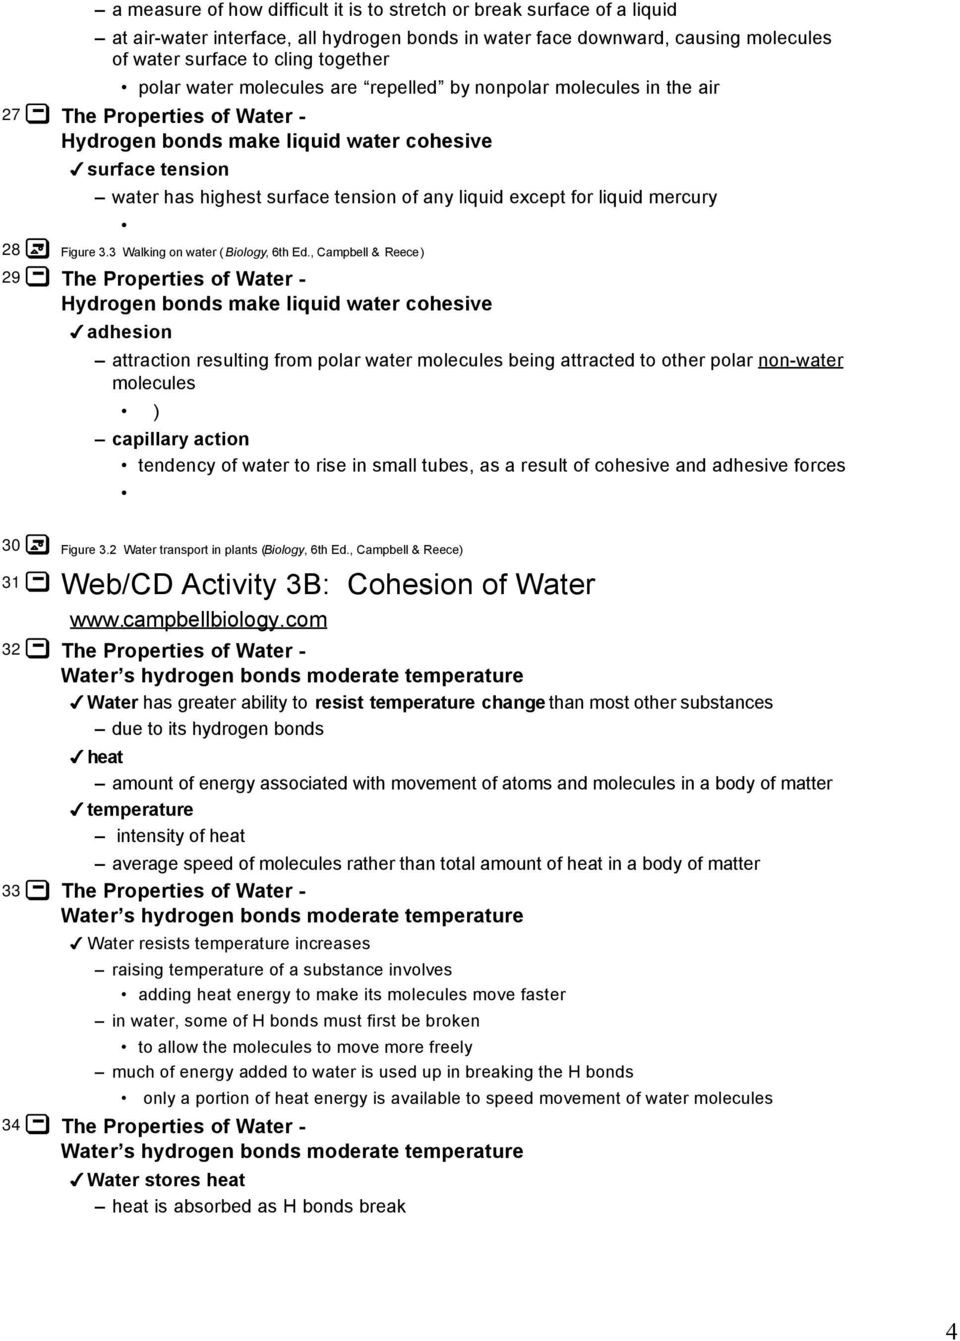 Properties Of Water Worksheet Biology the Properties Of Water Pdf Free Download